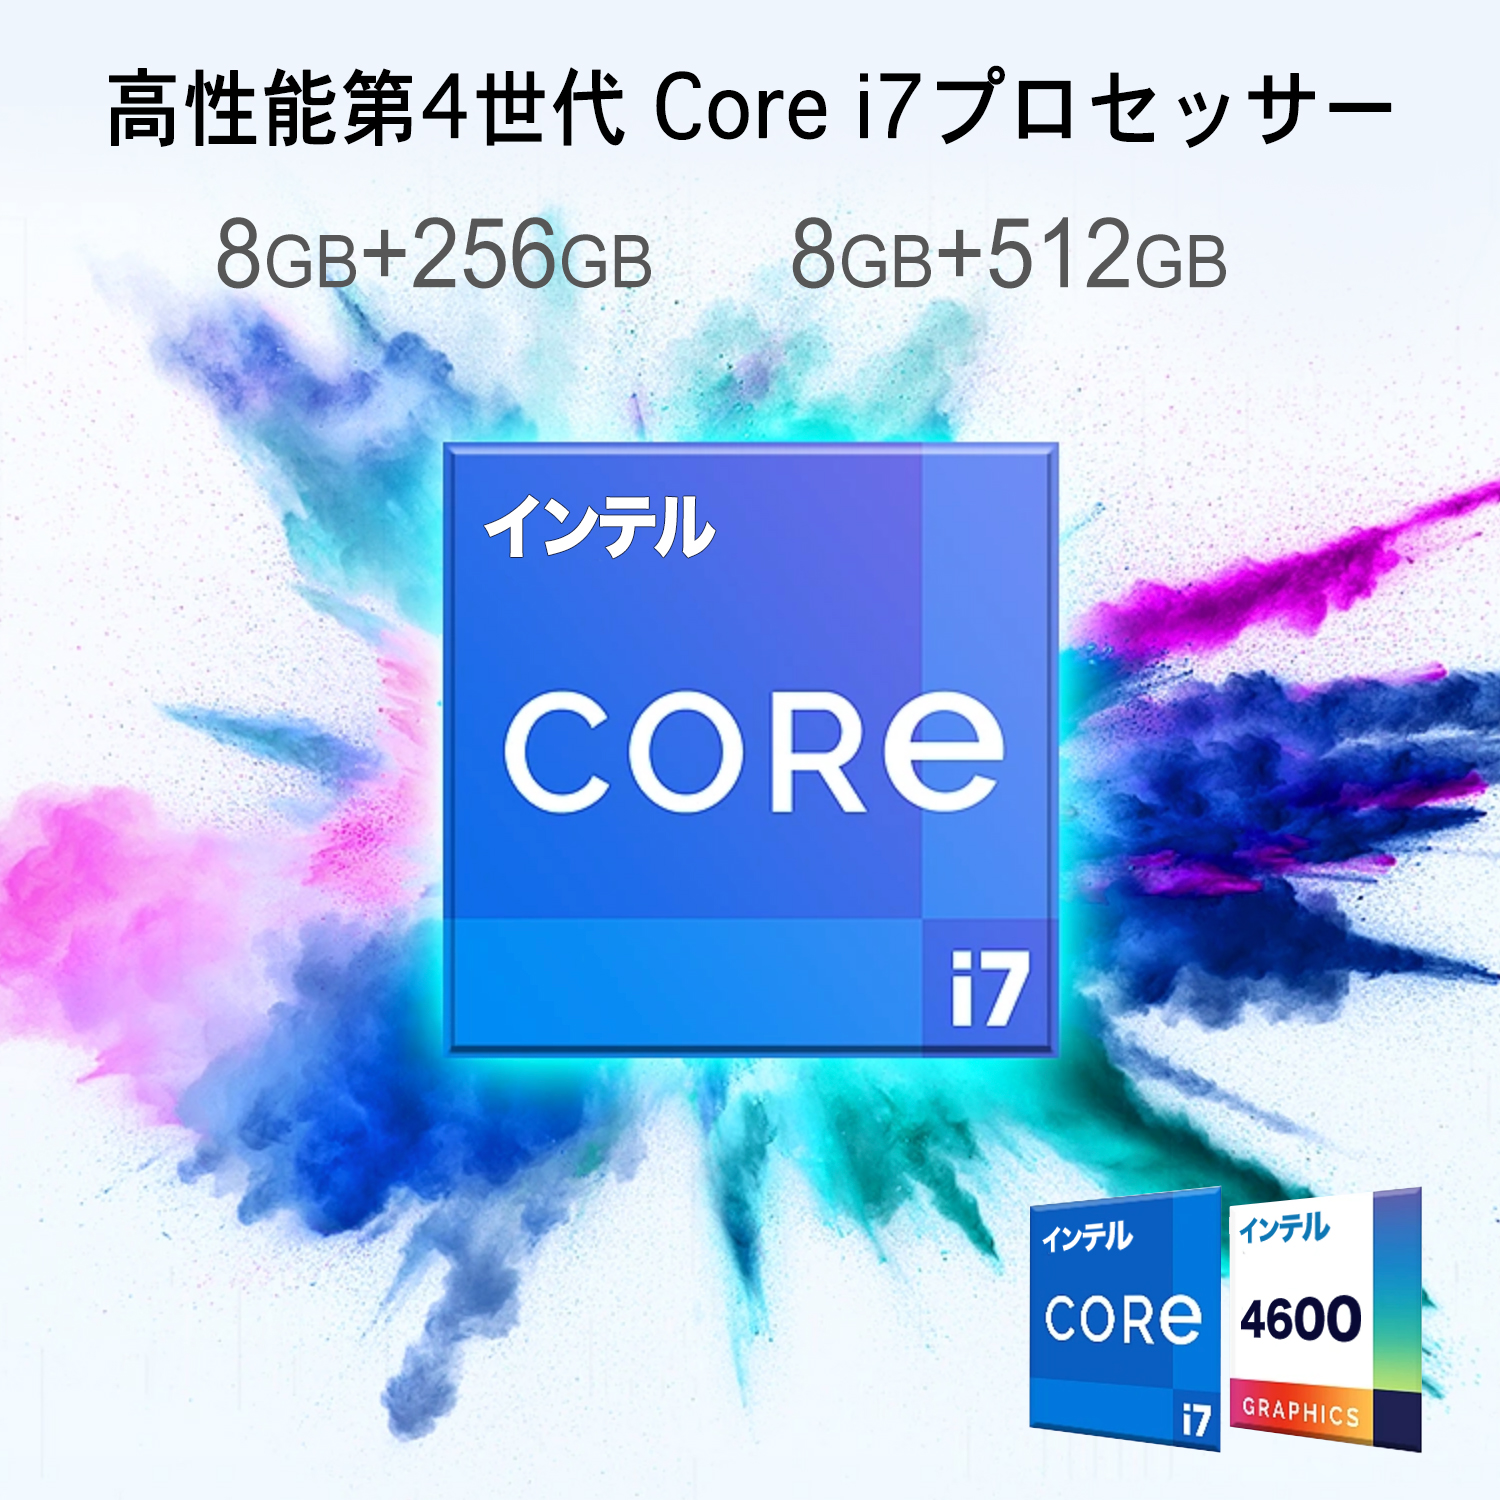 デスクトップパソコン Core i7 第4世代 タッチパネル 24型フルHD 